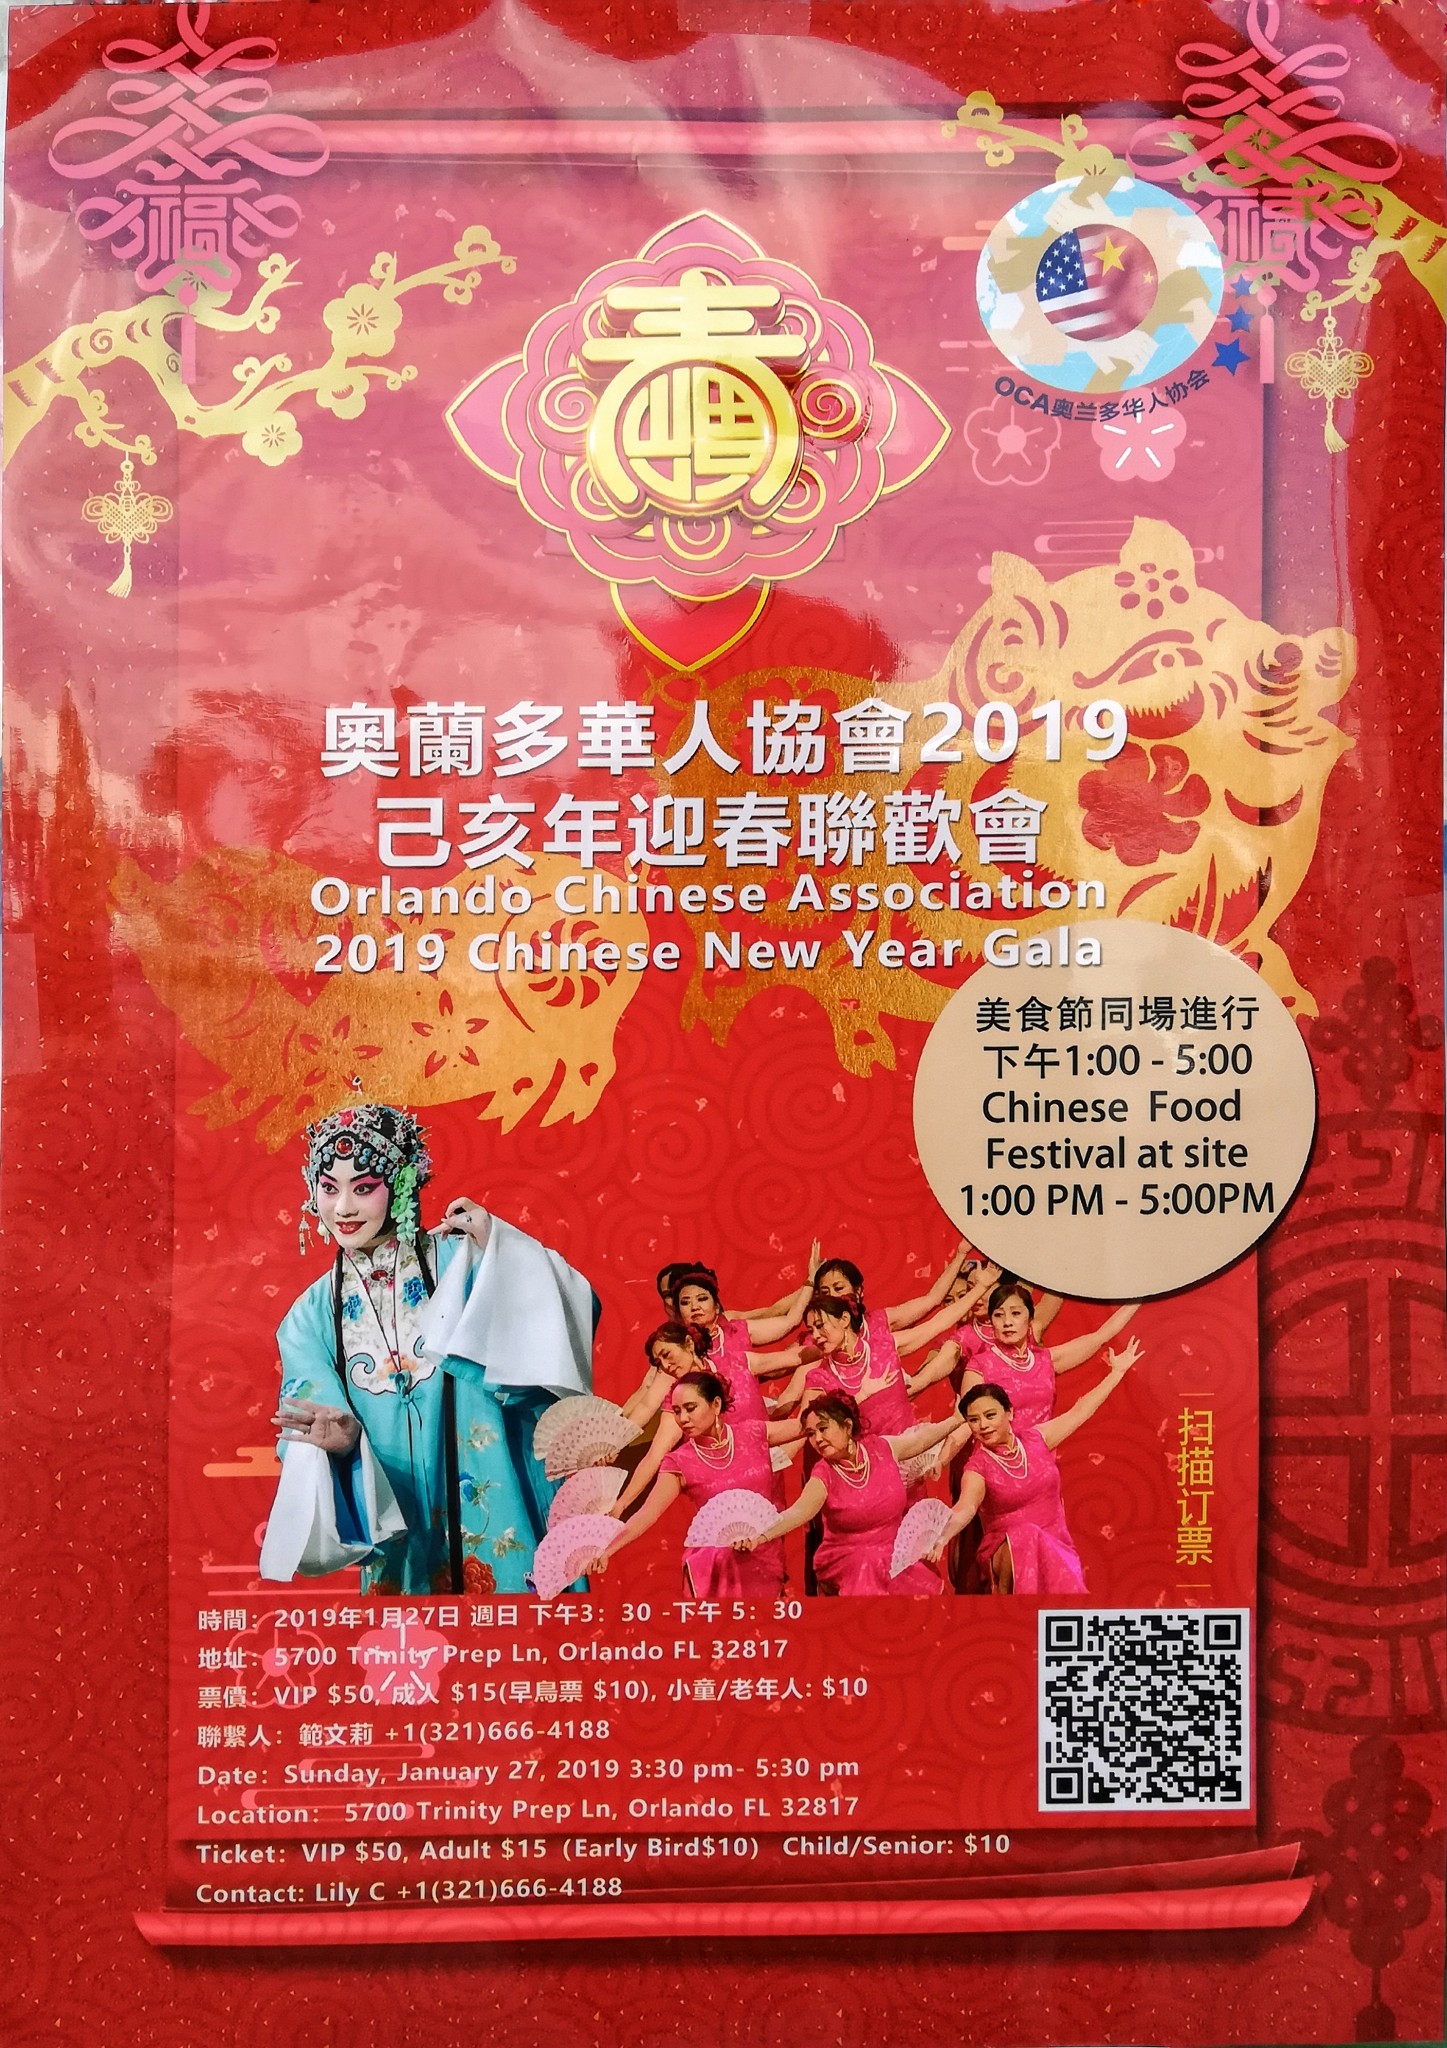 OCA Chinese New Year Gala